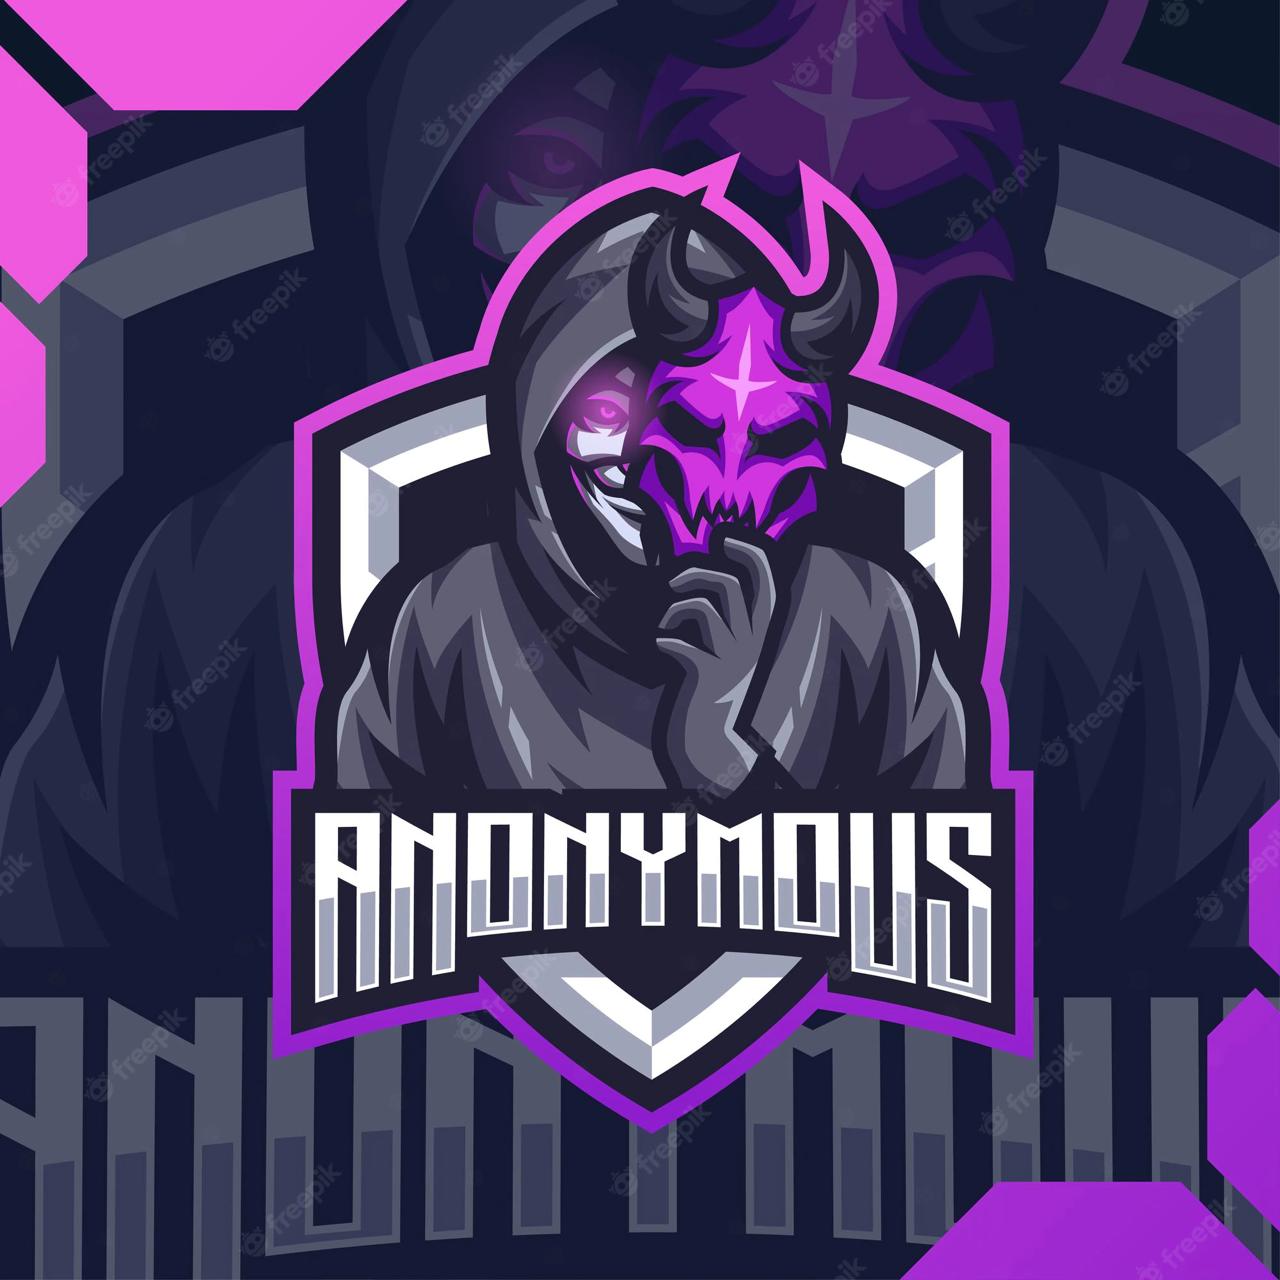 Team anonymous